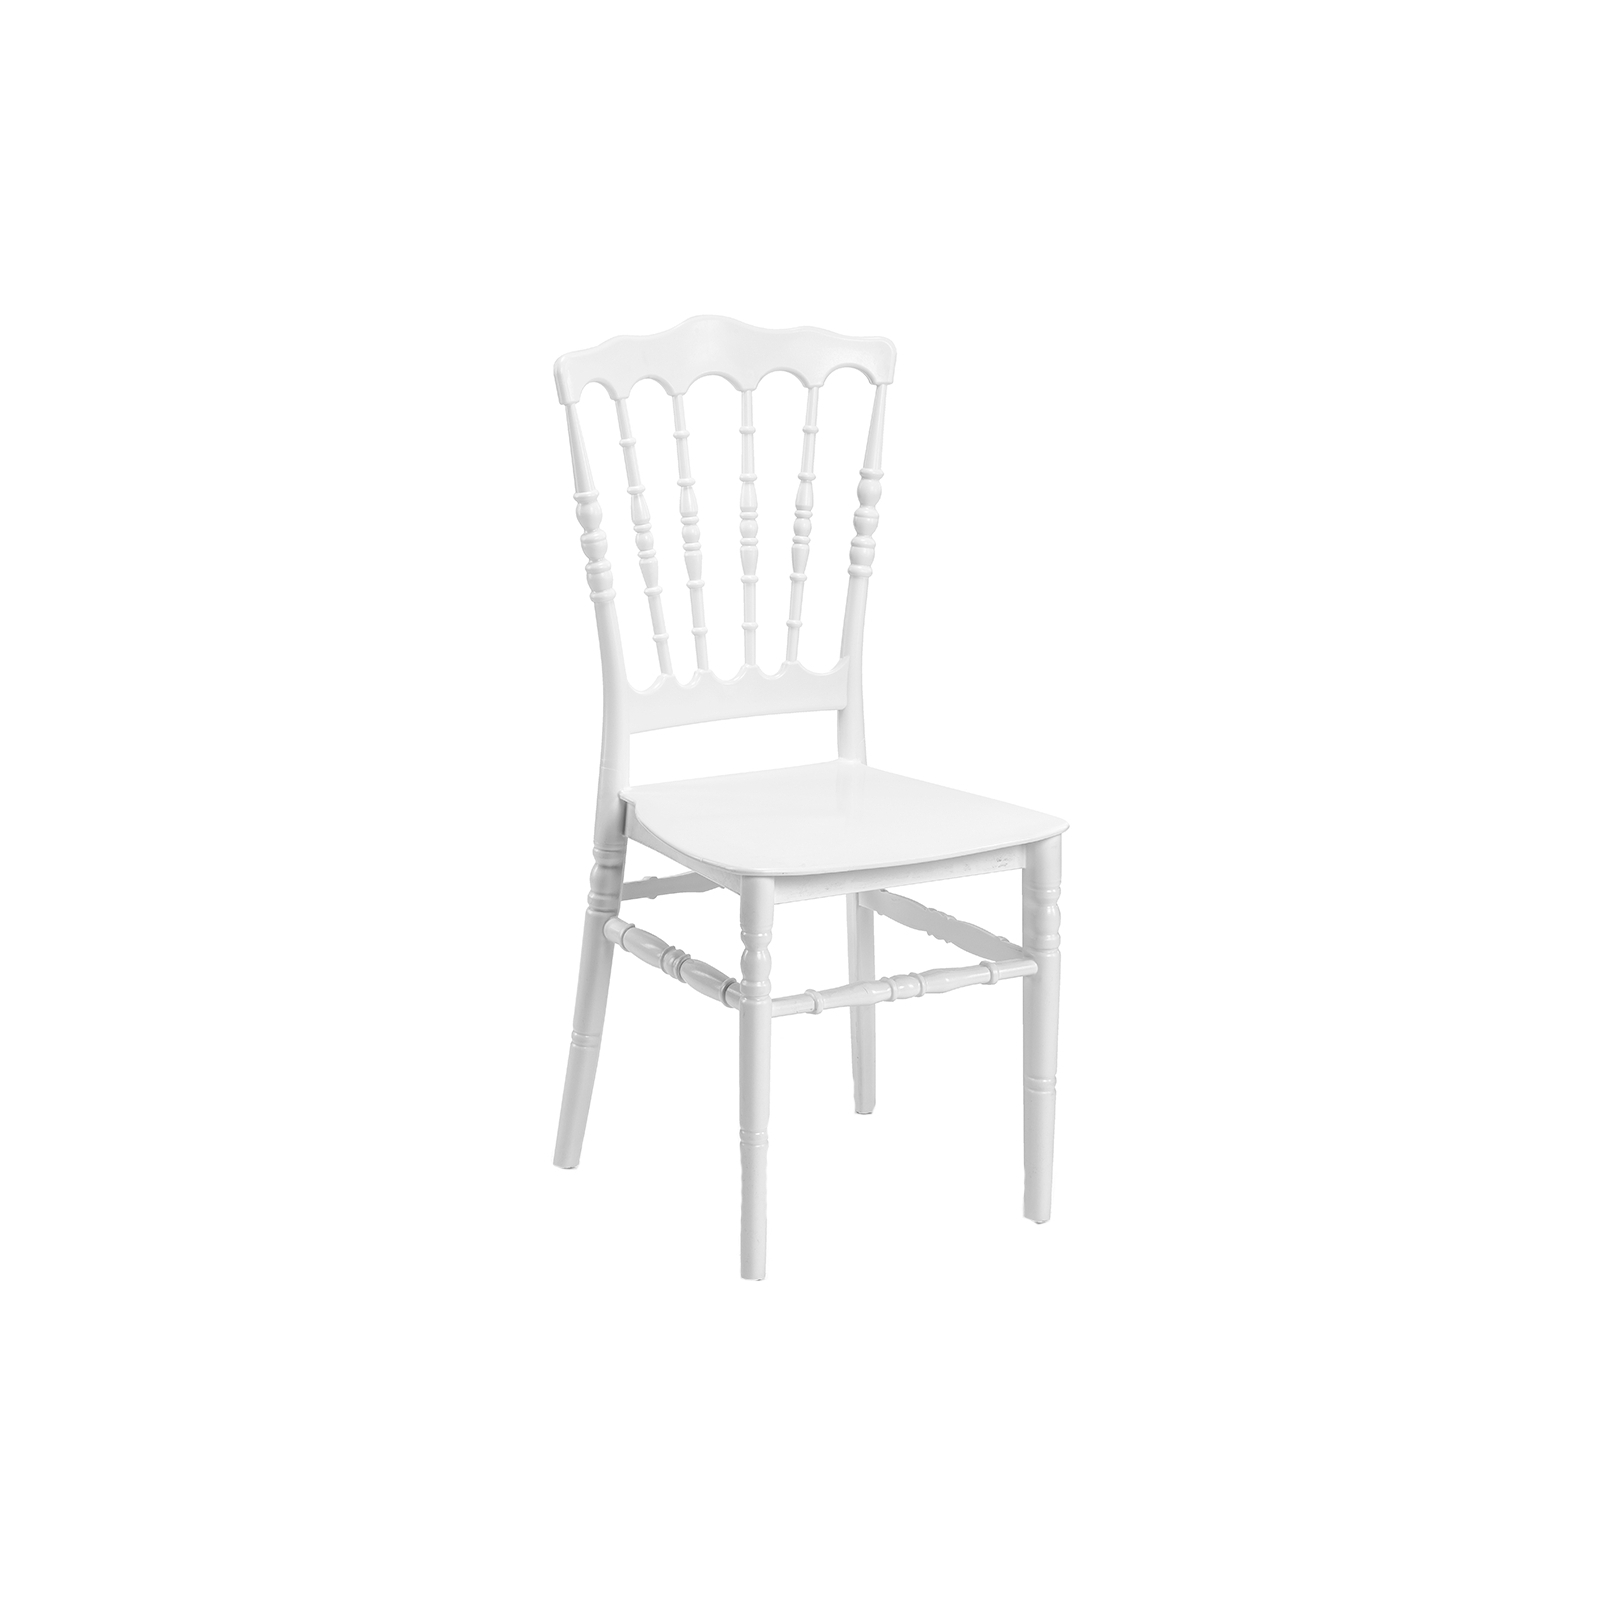 Кухонный стул Tilia Napoleon-XL белая слоновая кость / белая слоновая кость (9356)